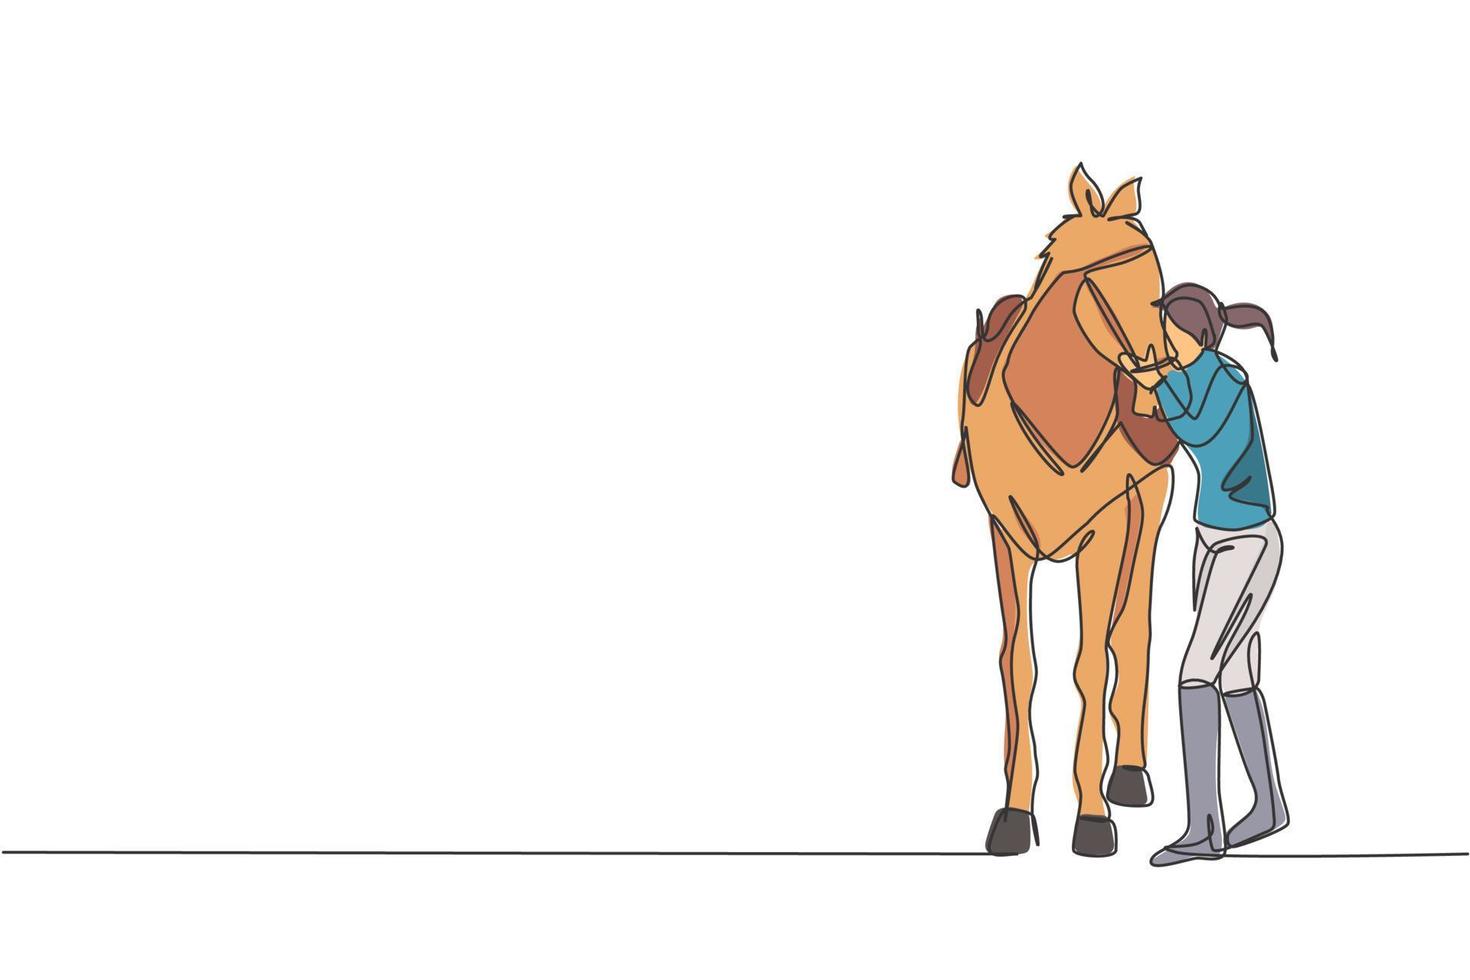 una sola línea dibujando a una joven jinete abrazando y frotando su pelo de caballo en una ilustración vectorial estable. concepto de competición de espectáculo deportivo ecuestre. diseño moderno de dibujo de línea continua vector